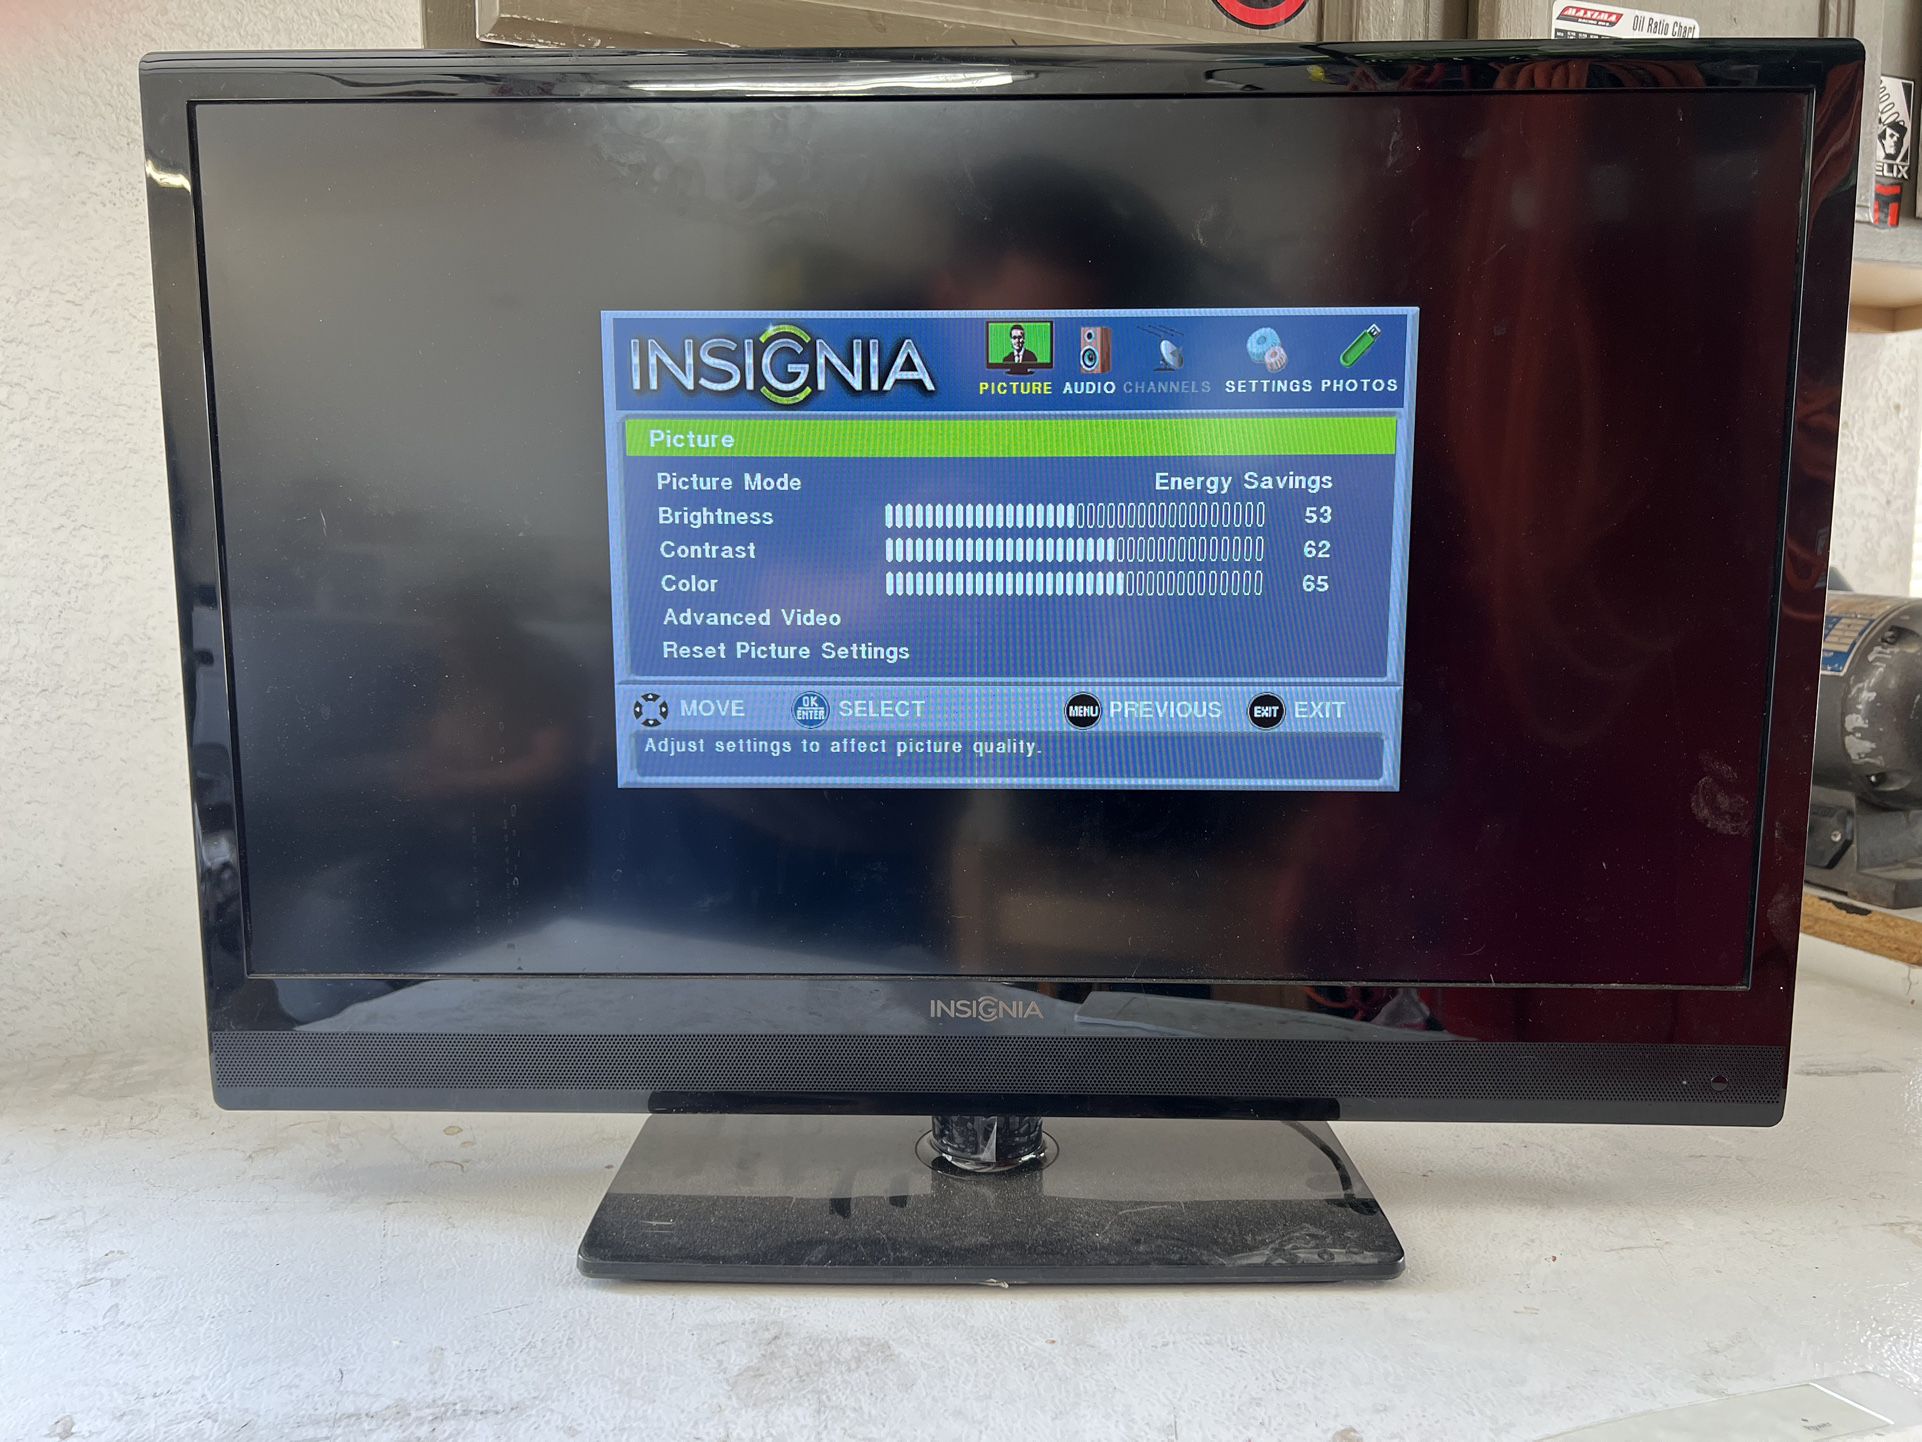 32 Inch LCD TV